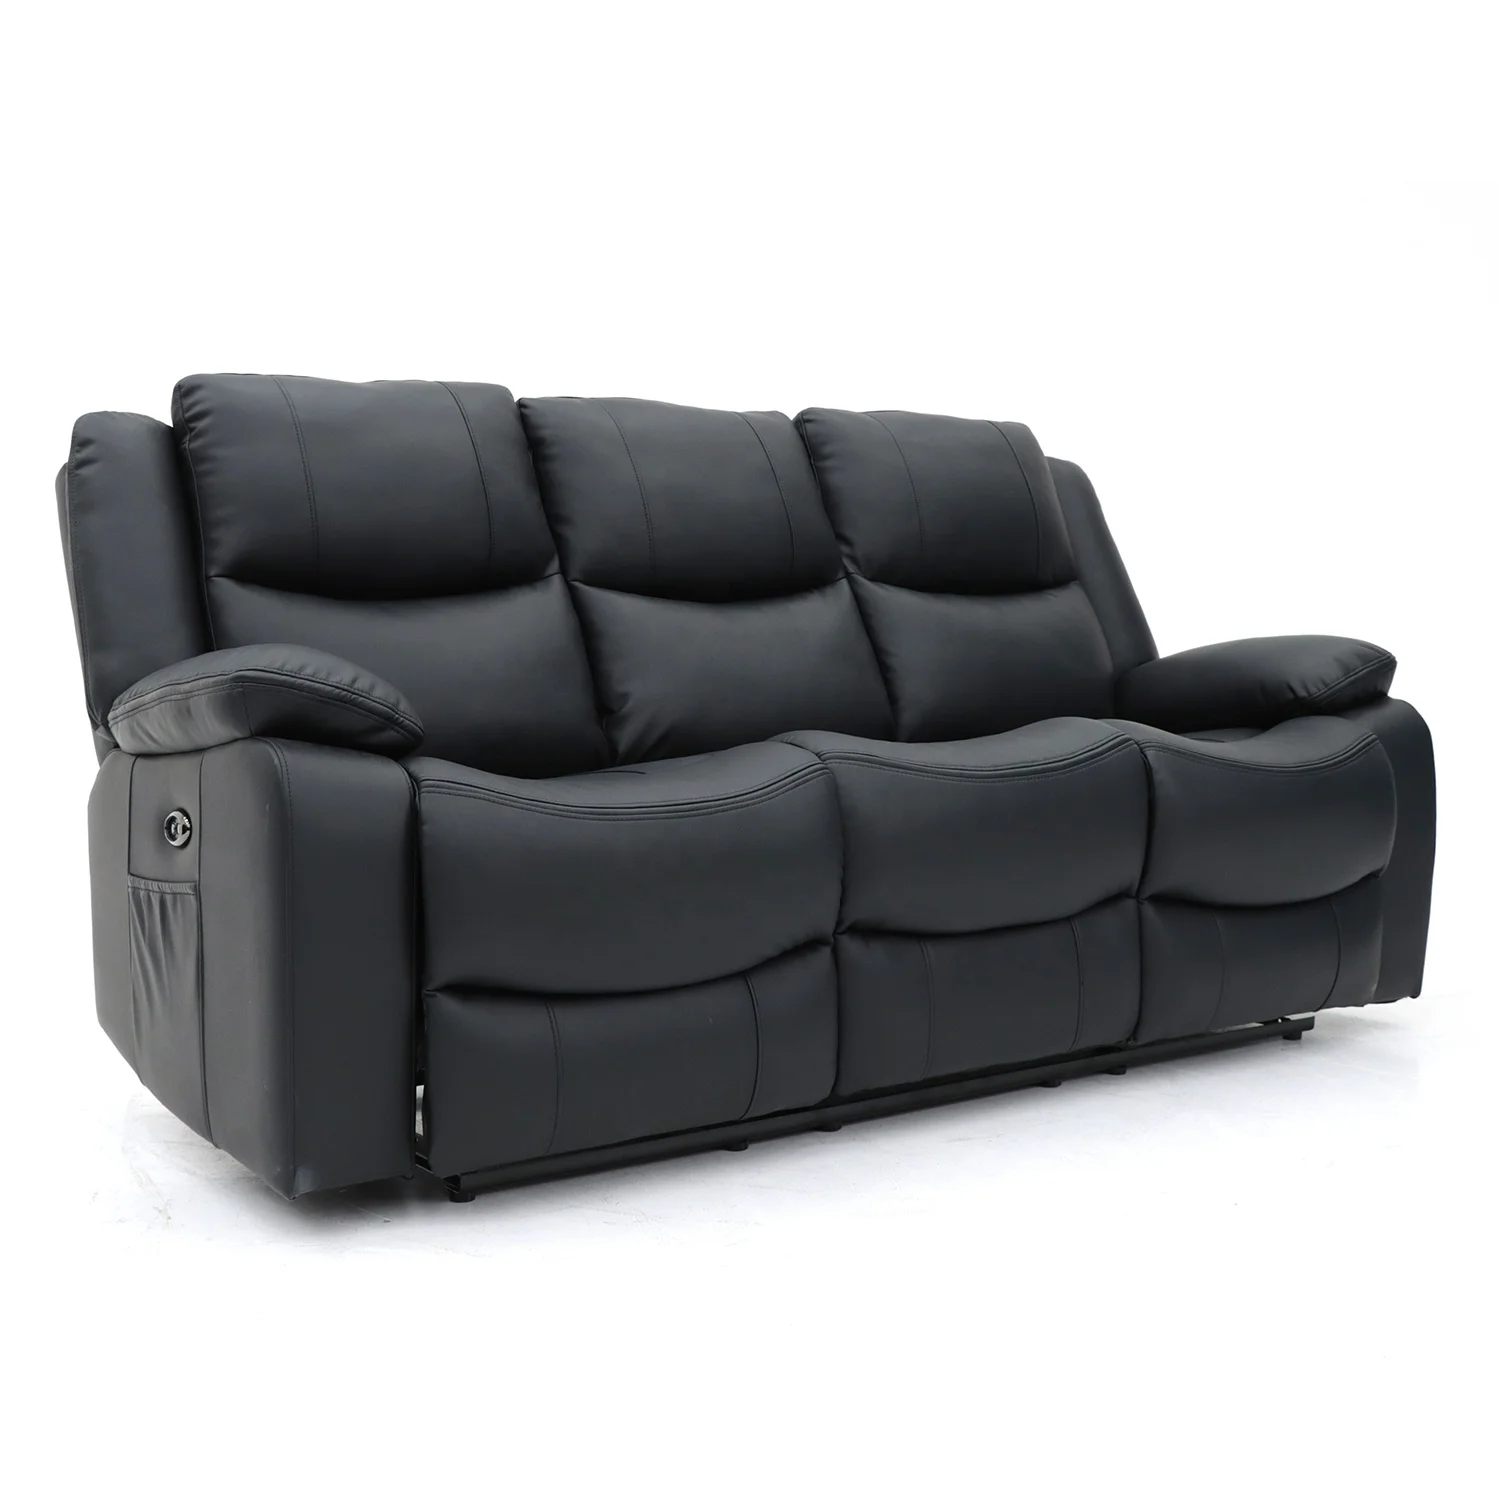 Geeksofa 3 + 2 + 1 современный 6-местный тканевый или натуральная кожа, откидной диван, набор для массажа, для мебели в гостиной